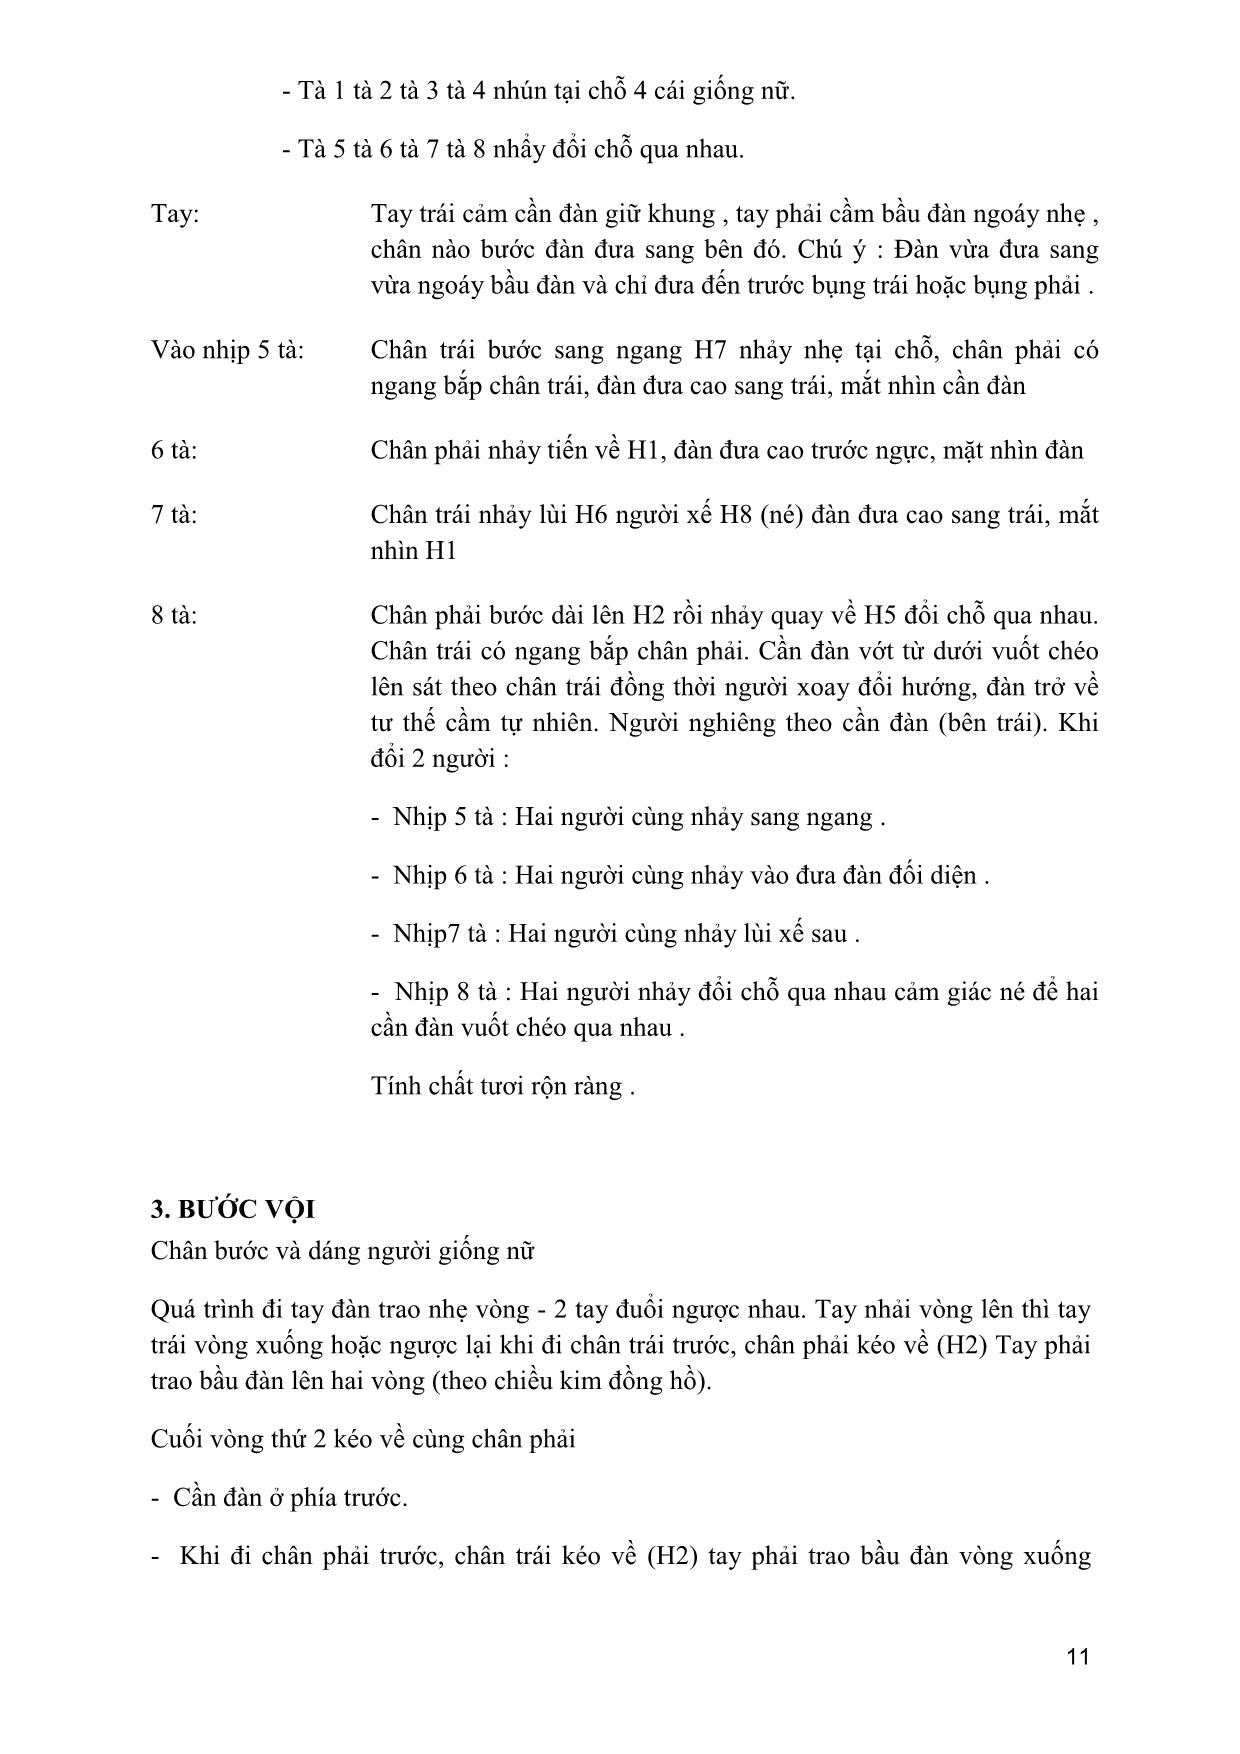 Giáo trình Múa dân gian dân tộc Việt Nam 4 trang 10